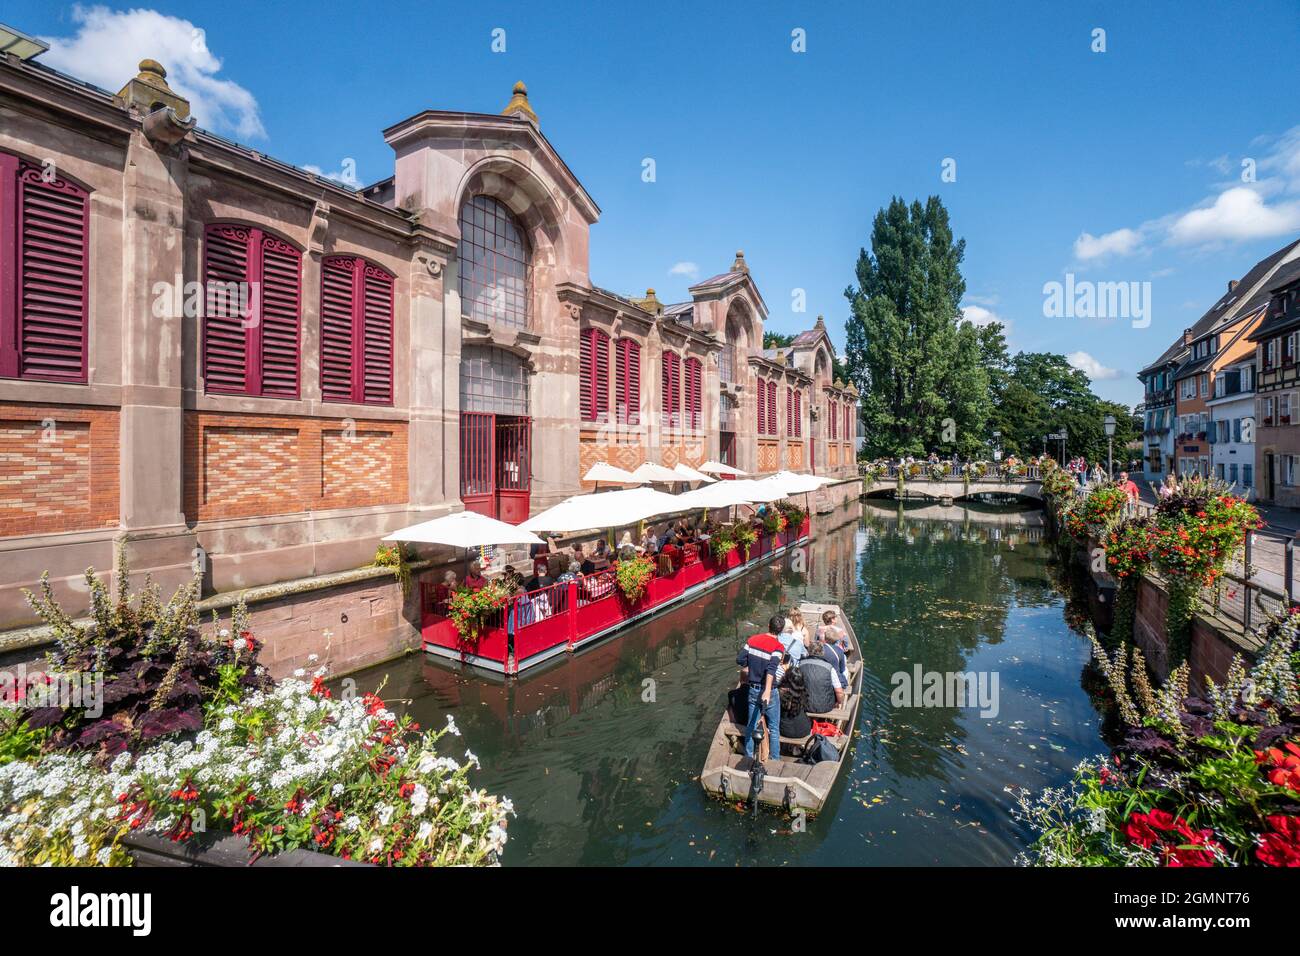 Markthalle in Klein Venedig, Holzboot mit Touristen, Kanal, Colmar, Elsass, Frankreich, Europa Foto de stock